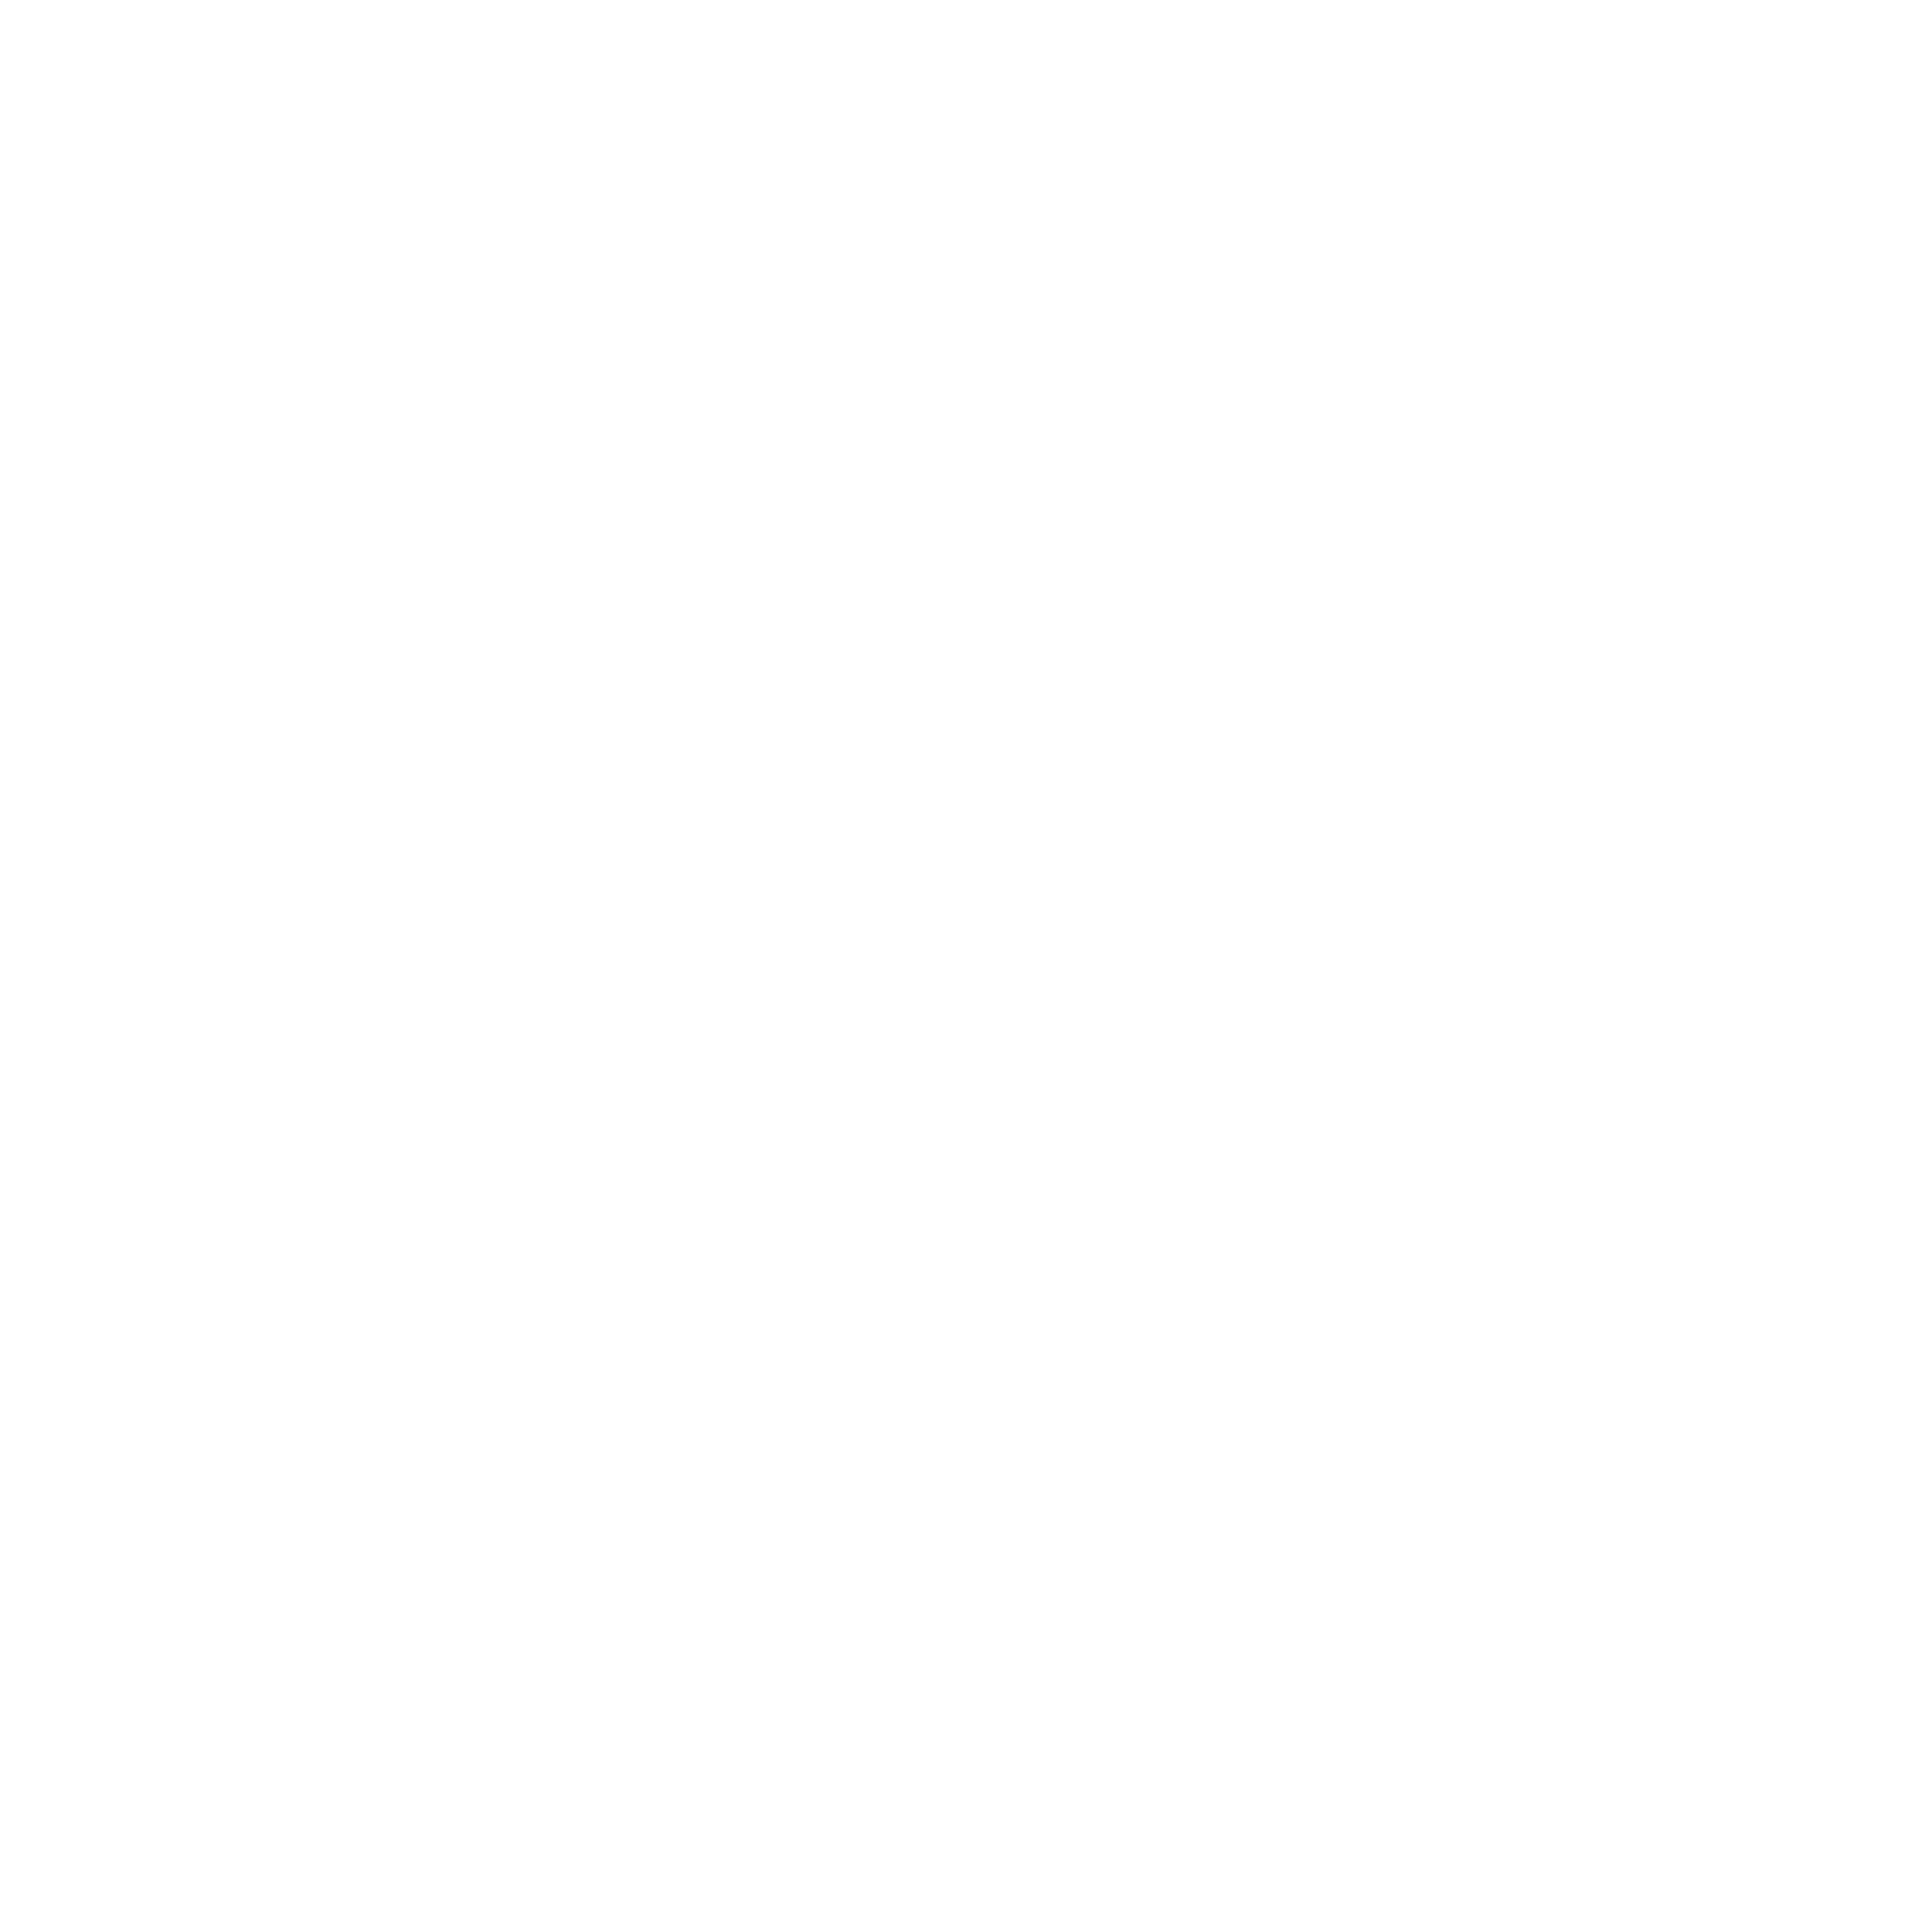 BruckZuckMusi